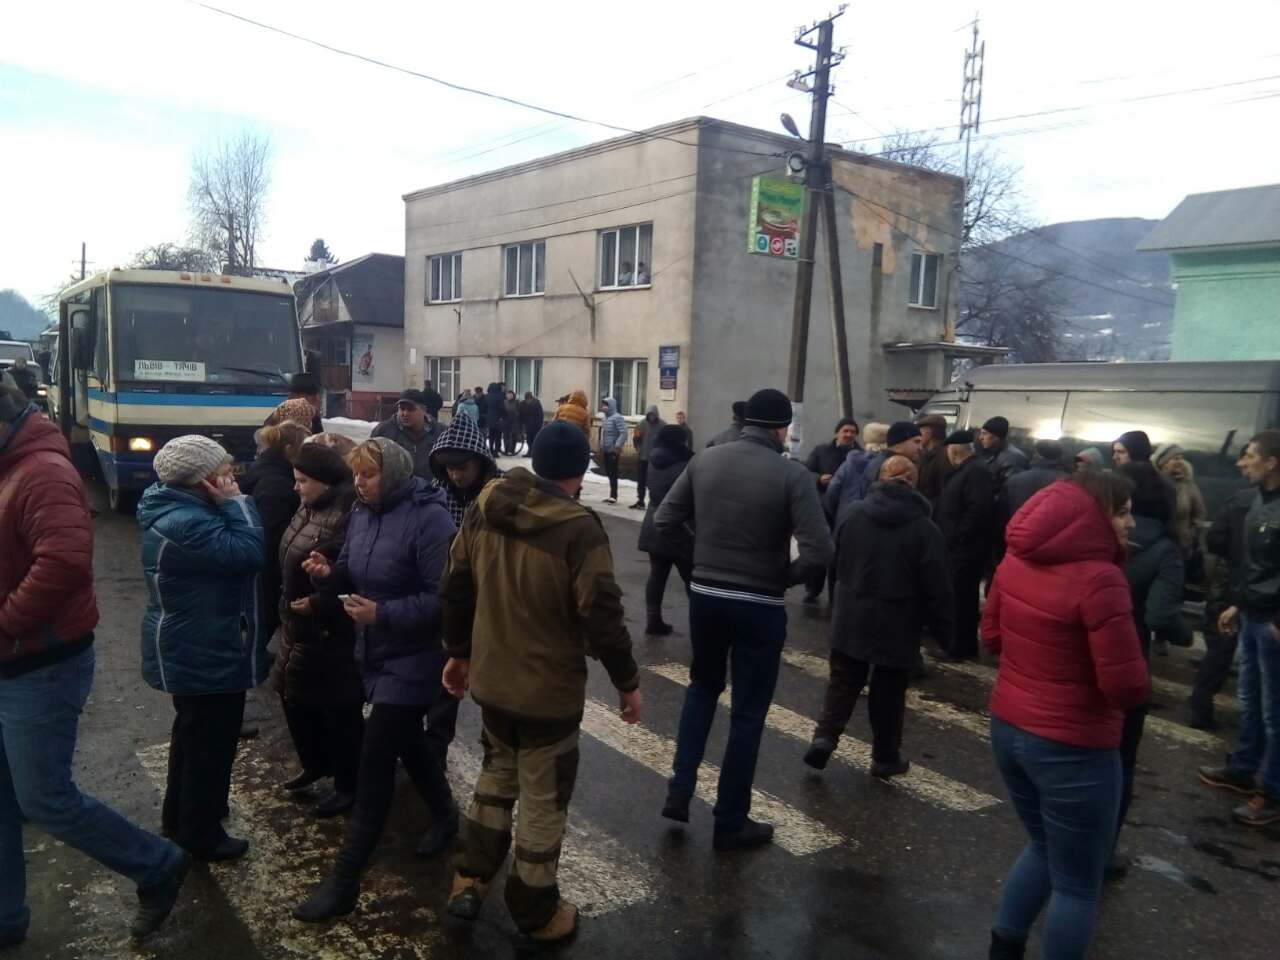 Мешканці обдзвонюють сільських депутатів і питають чому ті не прийшли на сесію, яку офіційно вимагали скликати від голови села Березово Б.Біляка на сьогодні.
